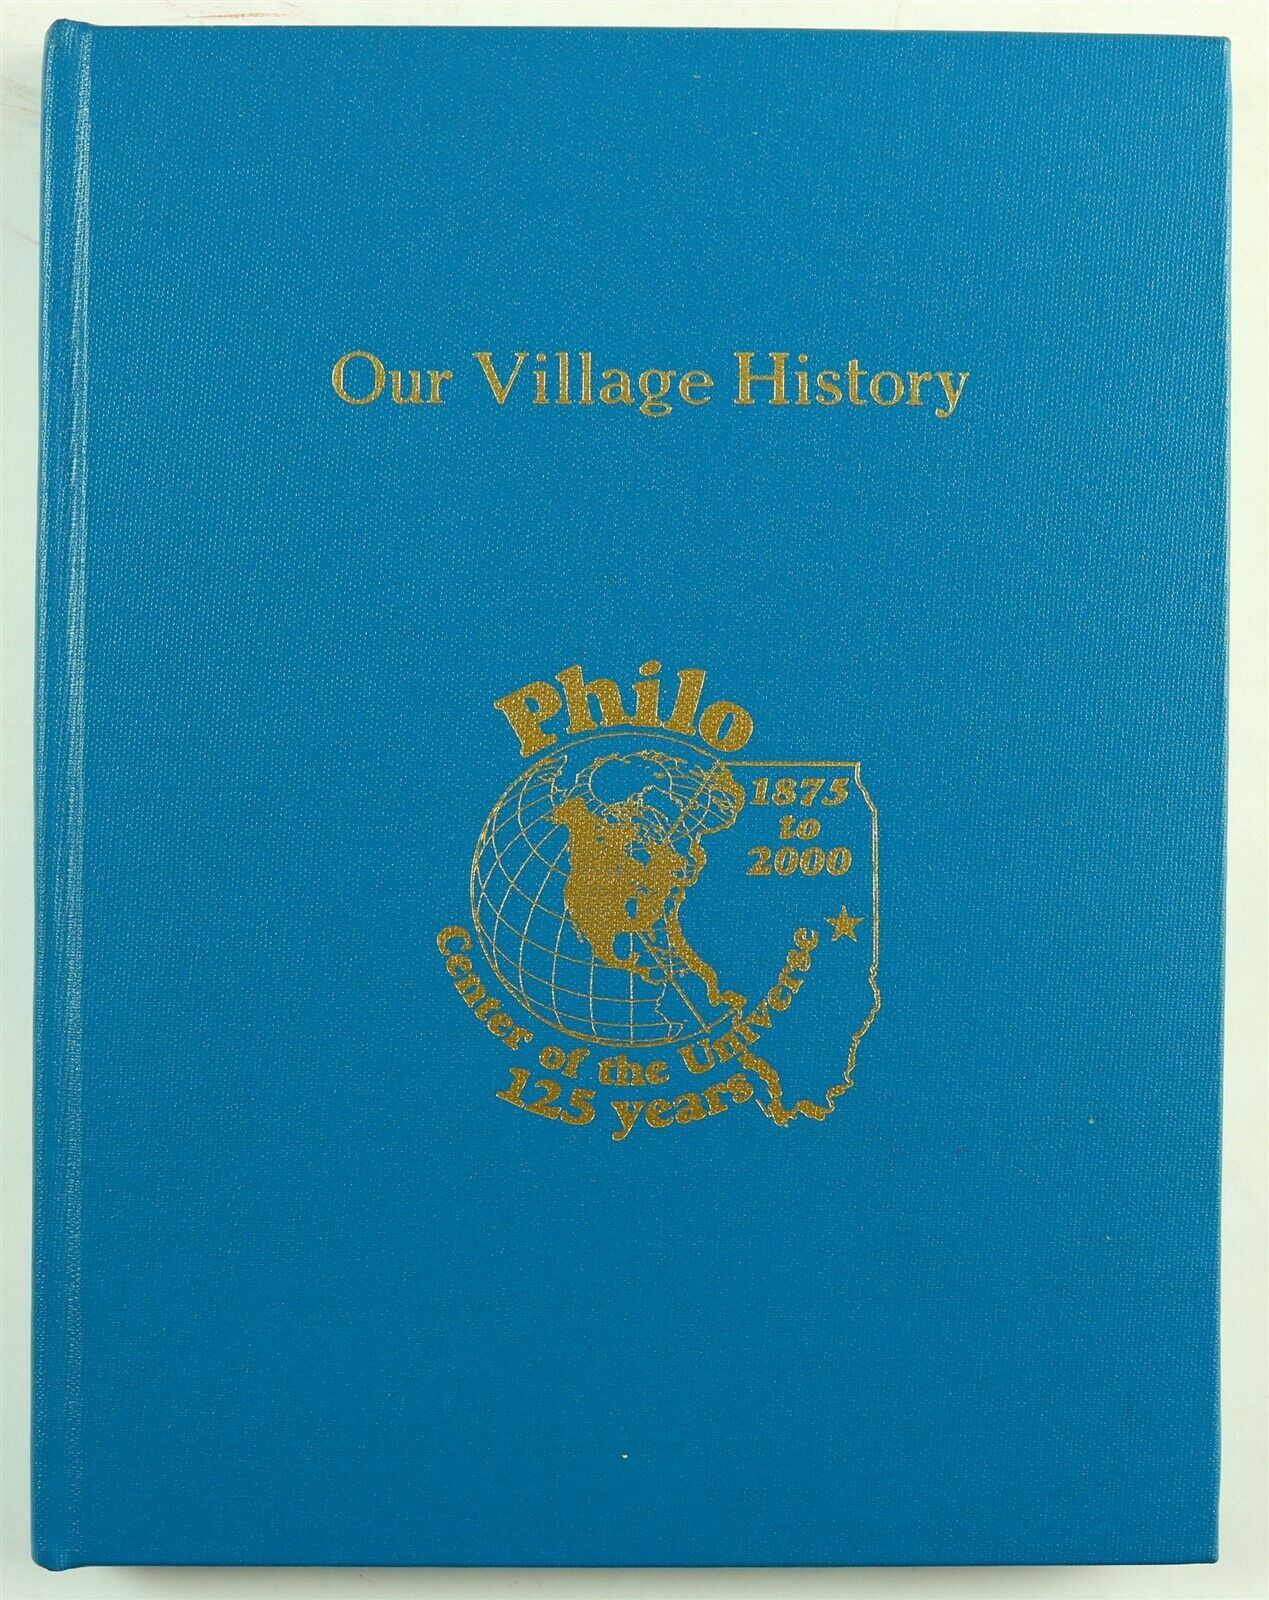 Philo, Illinois (champaign County, Il) 1875 - 2000 History Book